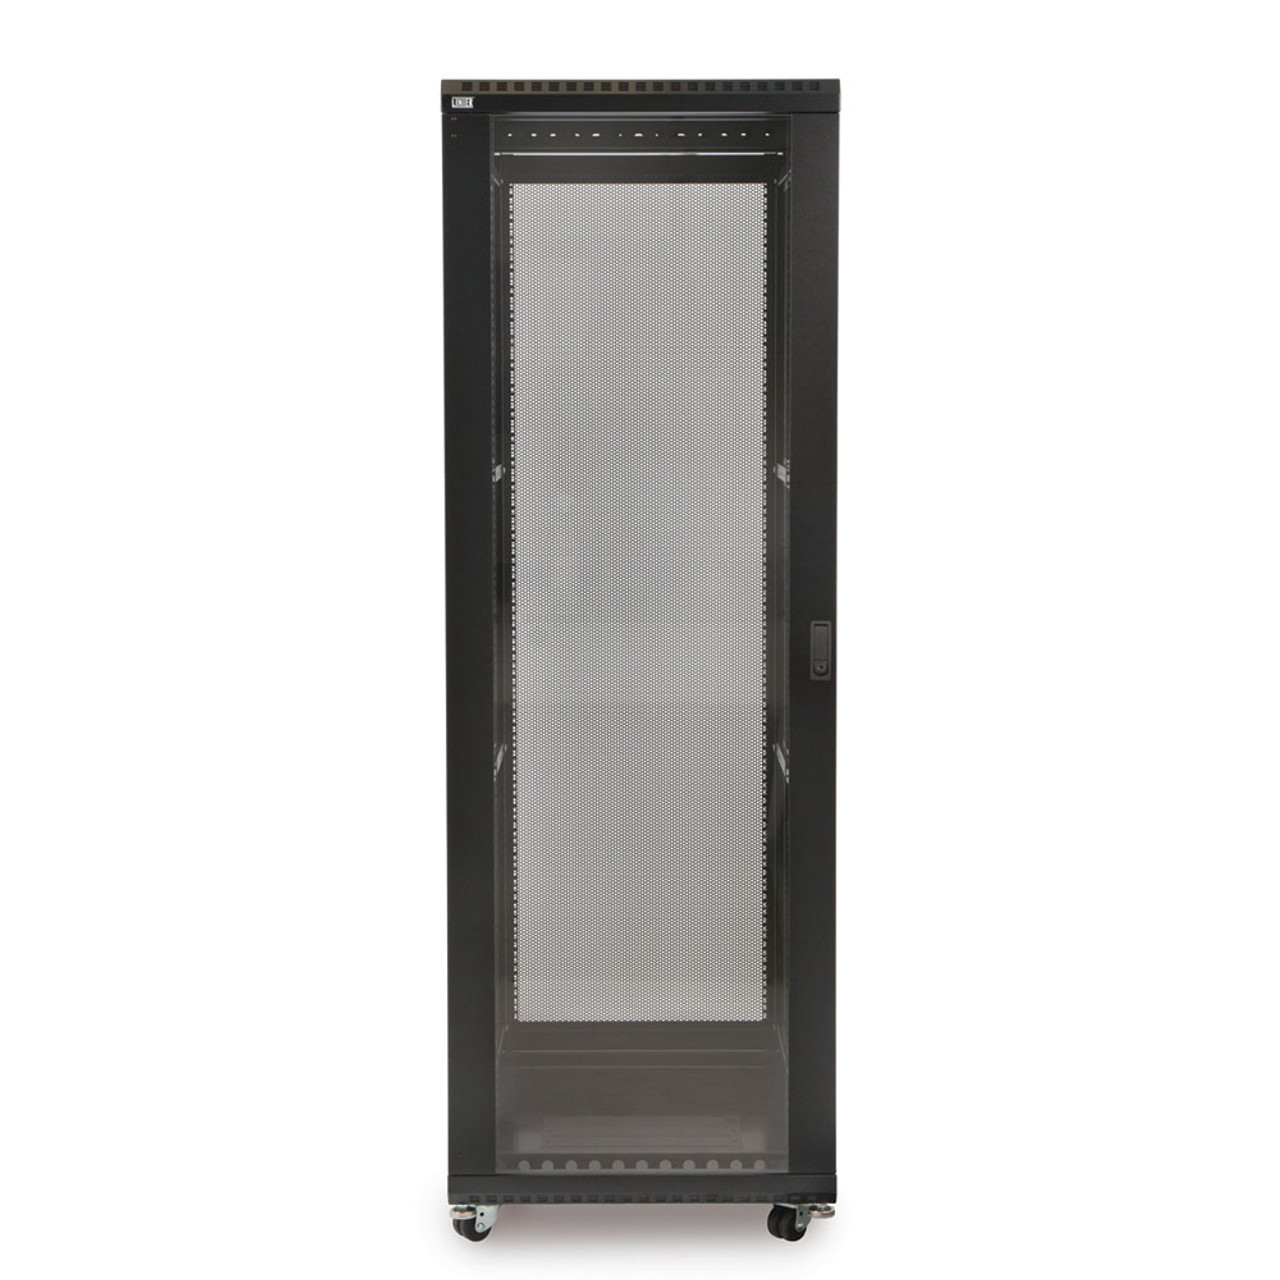 37U LINIER® Server Cabinet - Glass/Vented Doors - 36" Depth